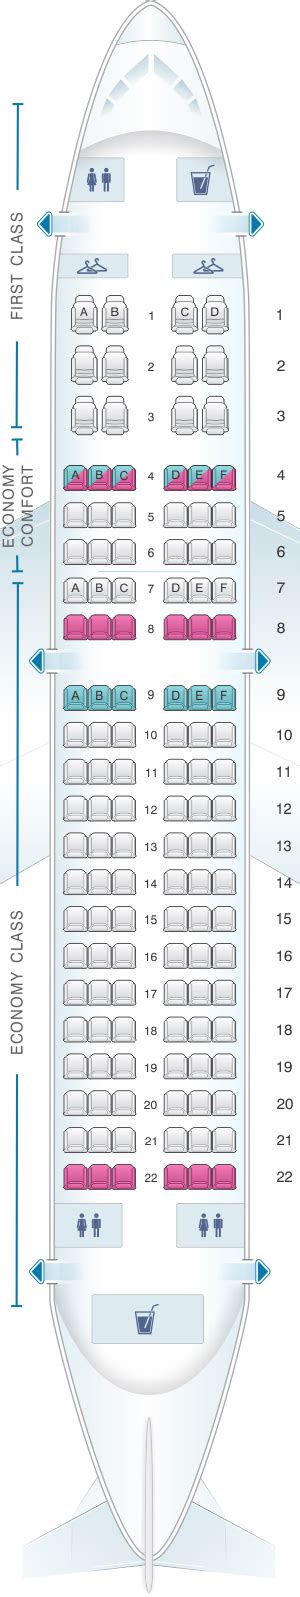 Plan De Cabine Delta Air Lines Airbus A319 100 Seatmaestrofr